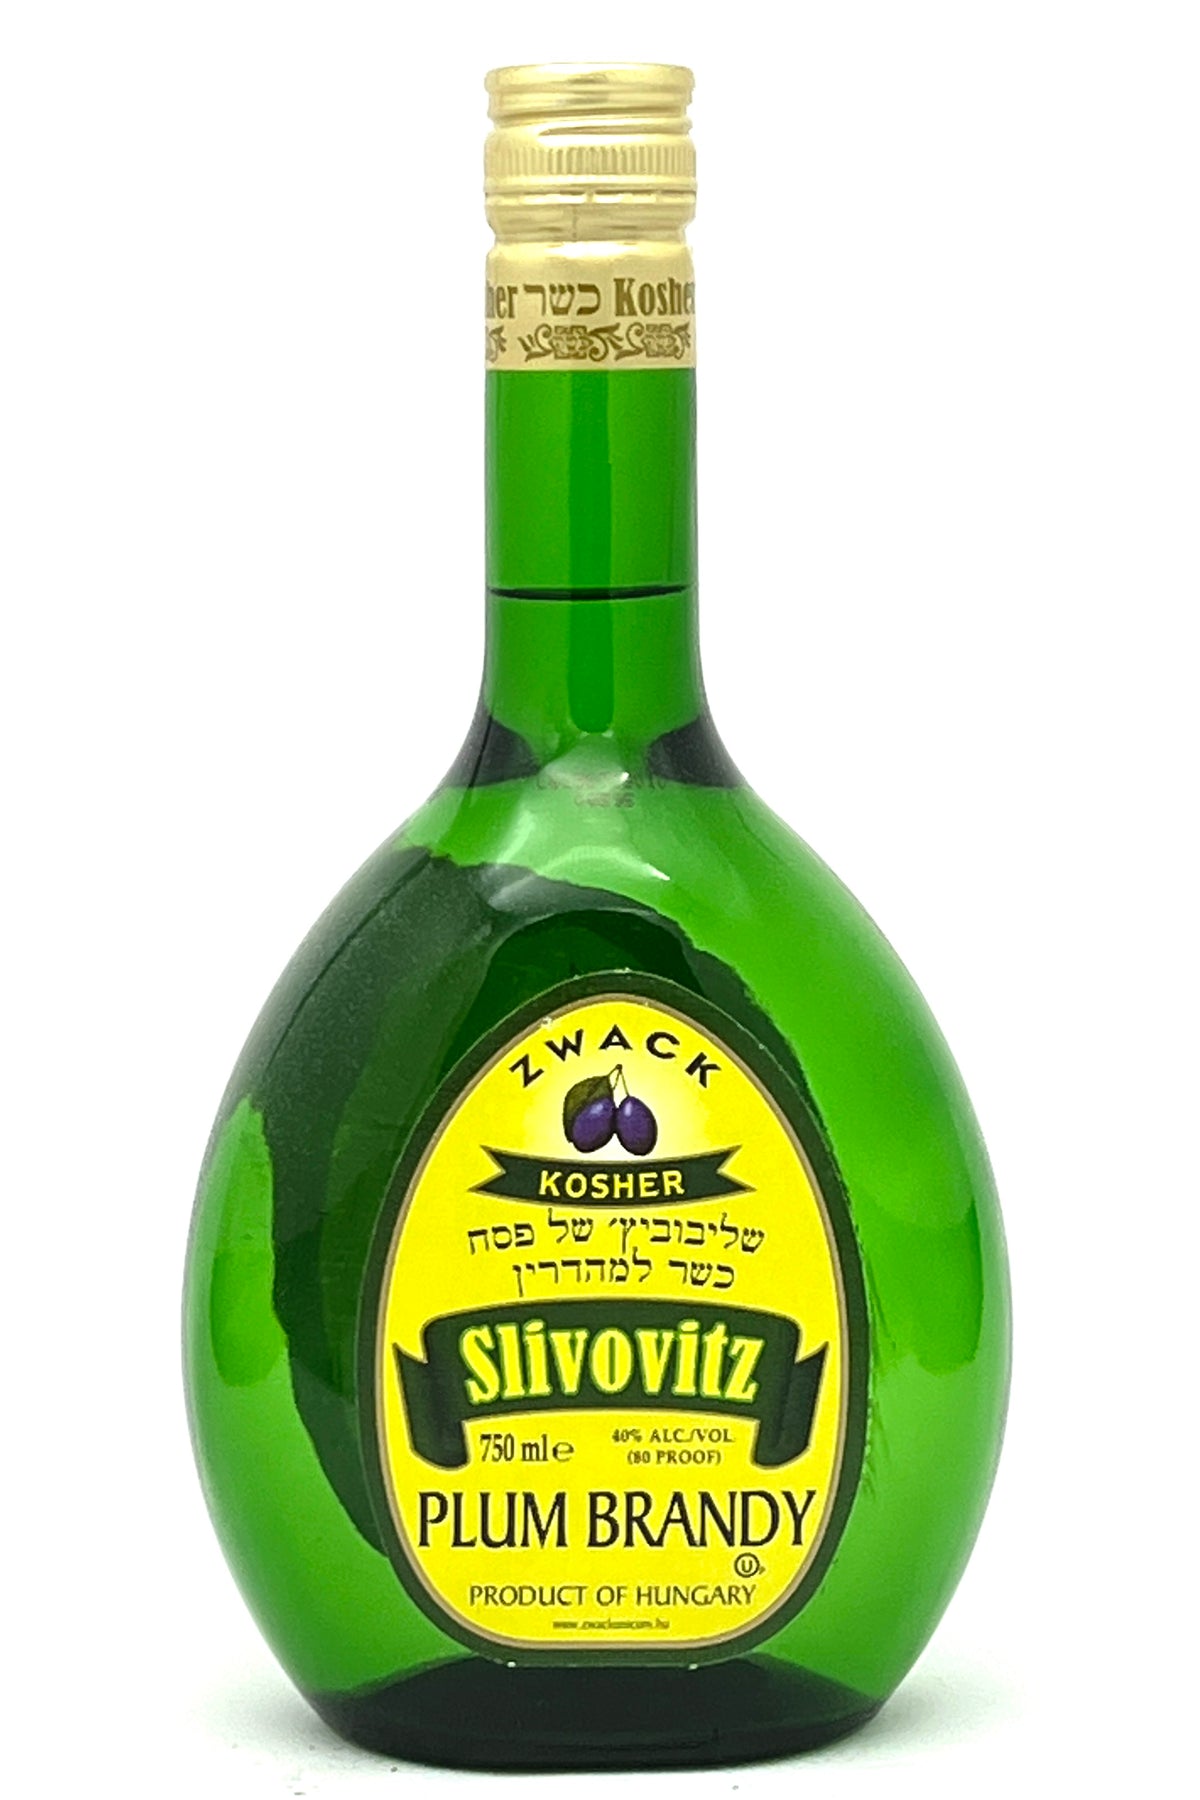 Zwack Slivovitz 3 Years Old Plum Brandy